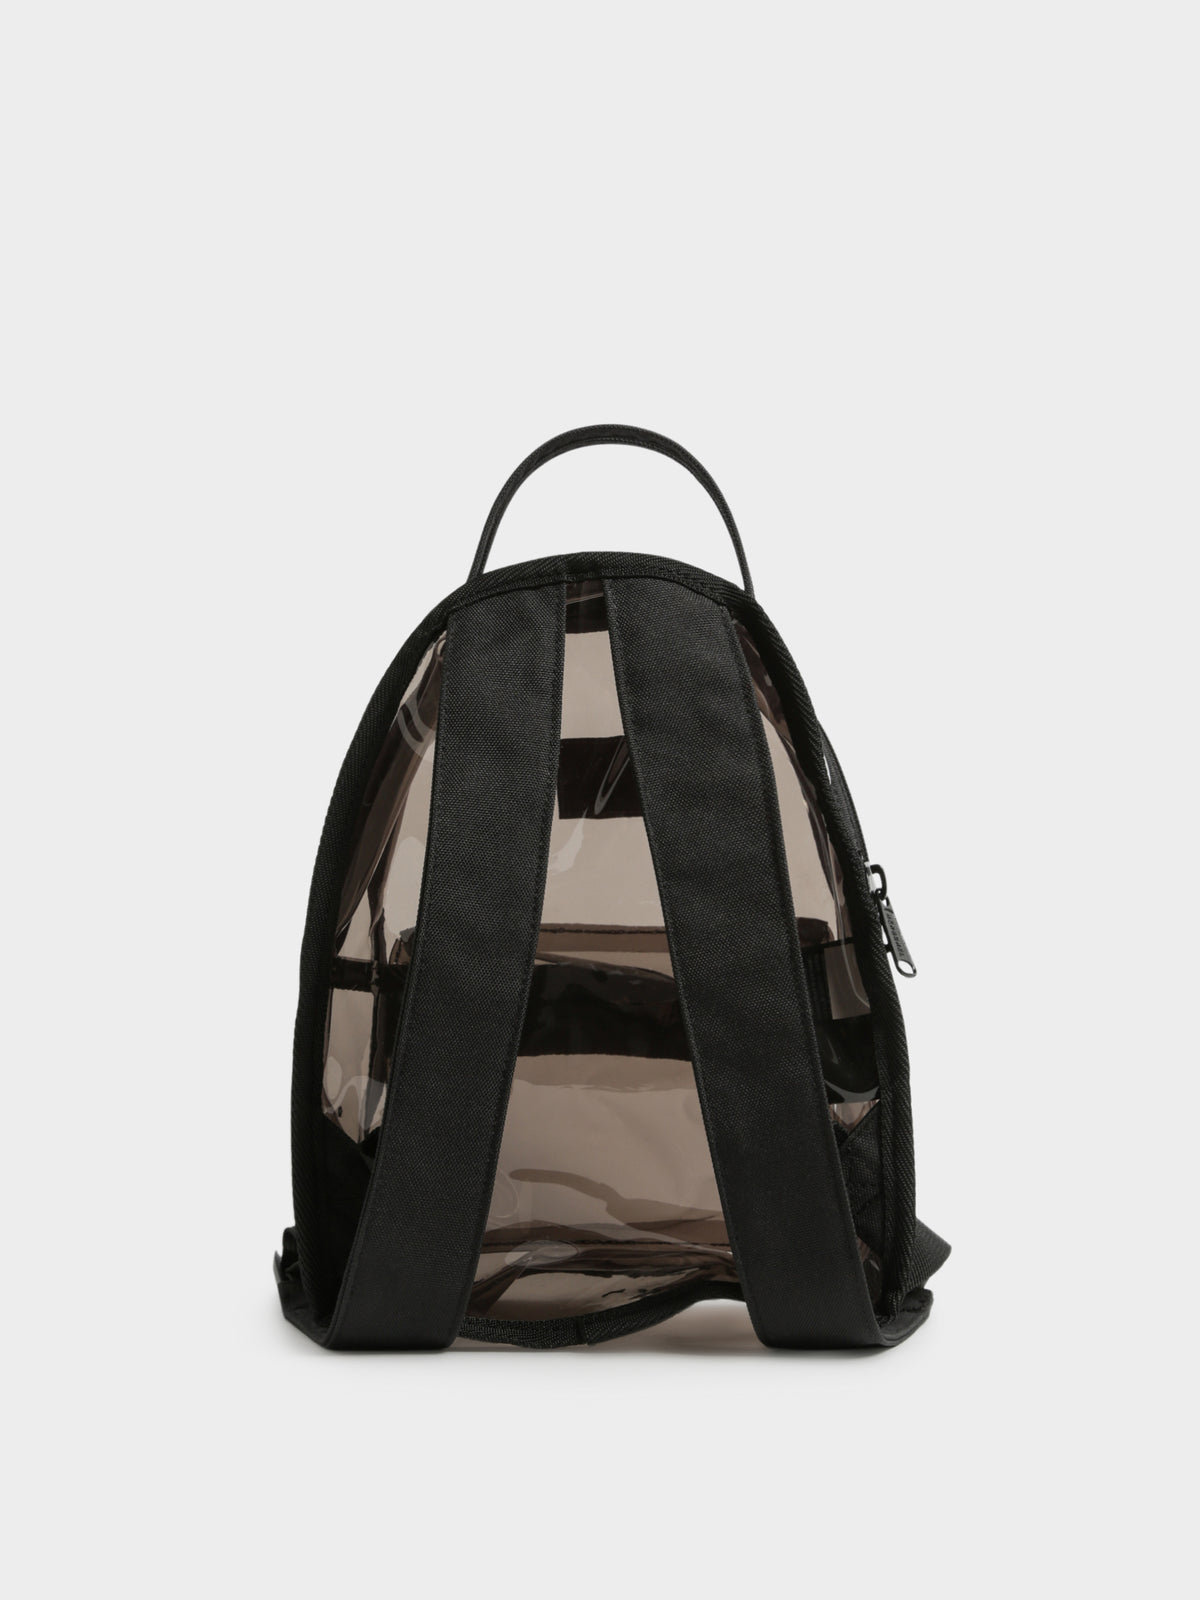 Nova Backpack in Black Smoke